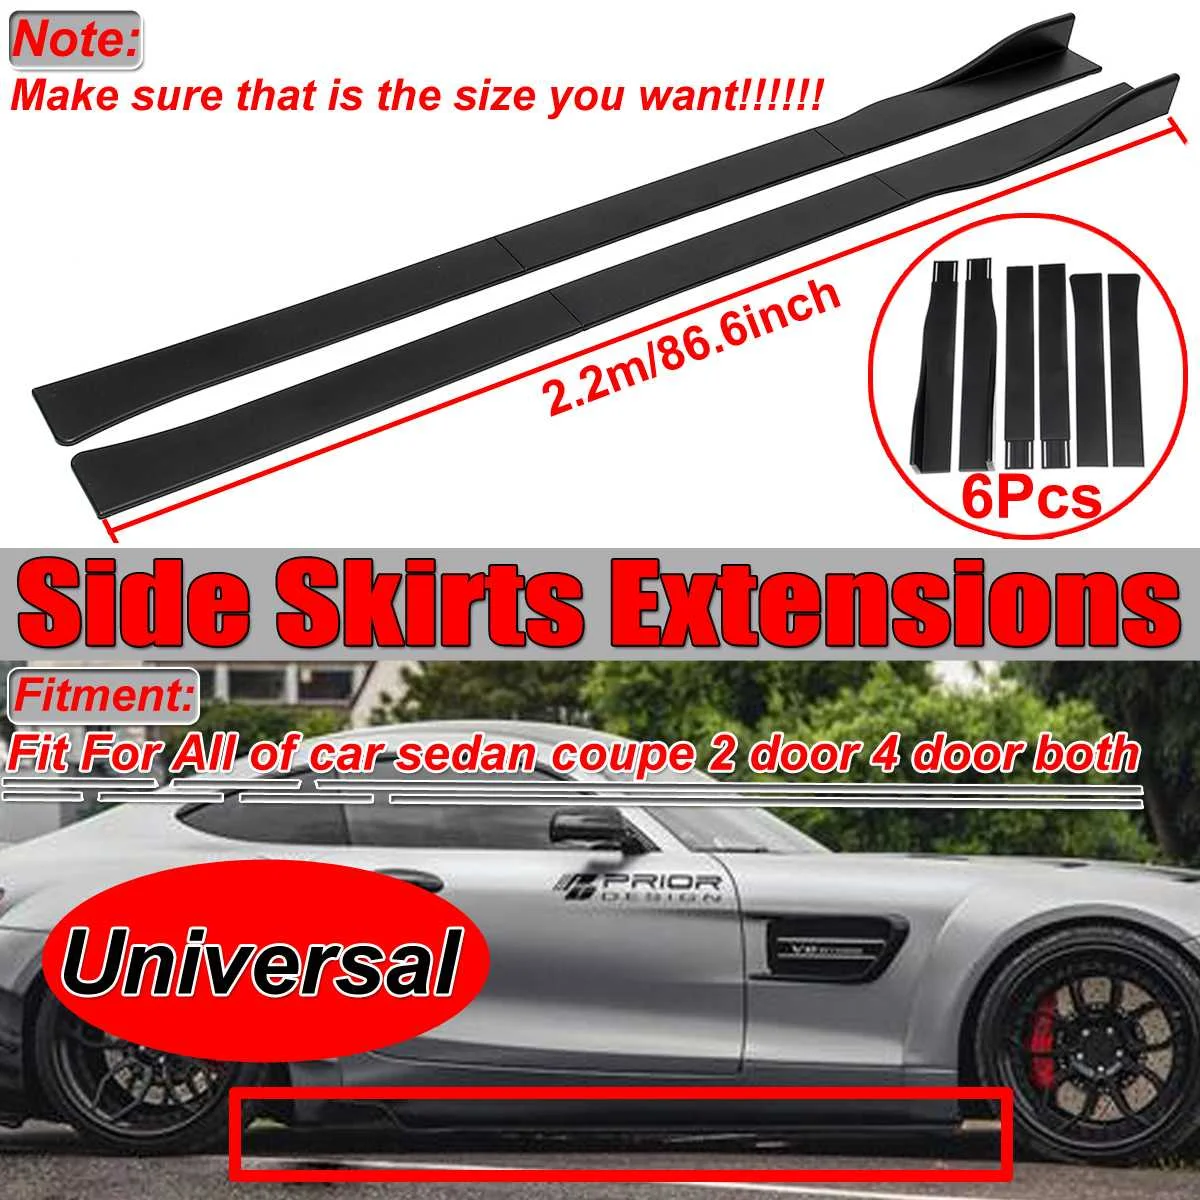 Универсальная для 2Dr/4Dr 2,2 m Автомобильная боковая юбка расширения для BMW для Honda для Benz боковая юбка расширение бампера разветвители Wnglet